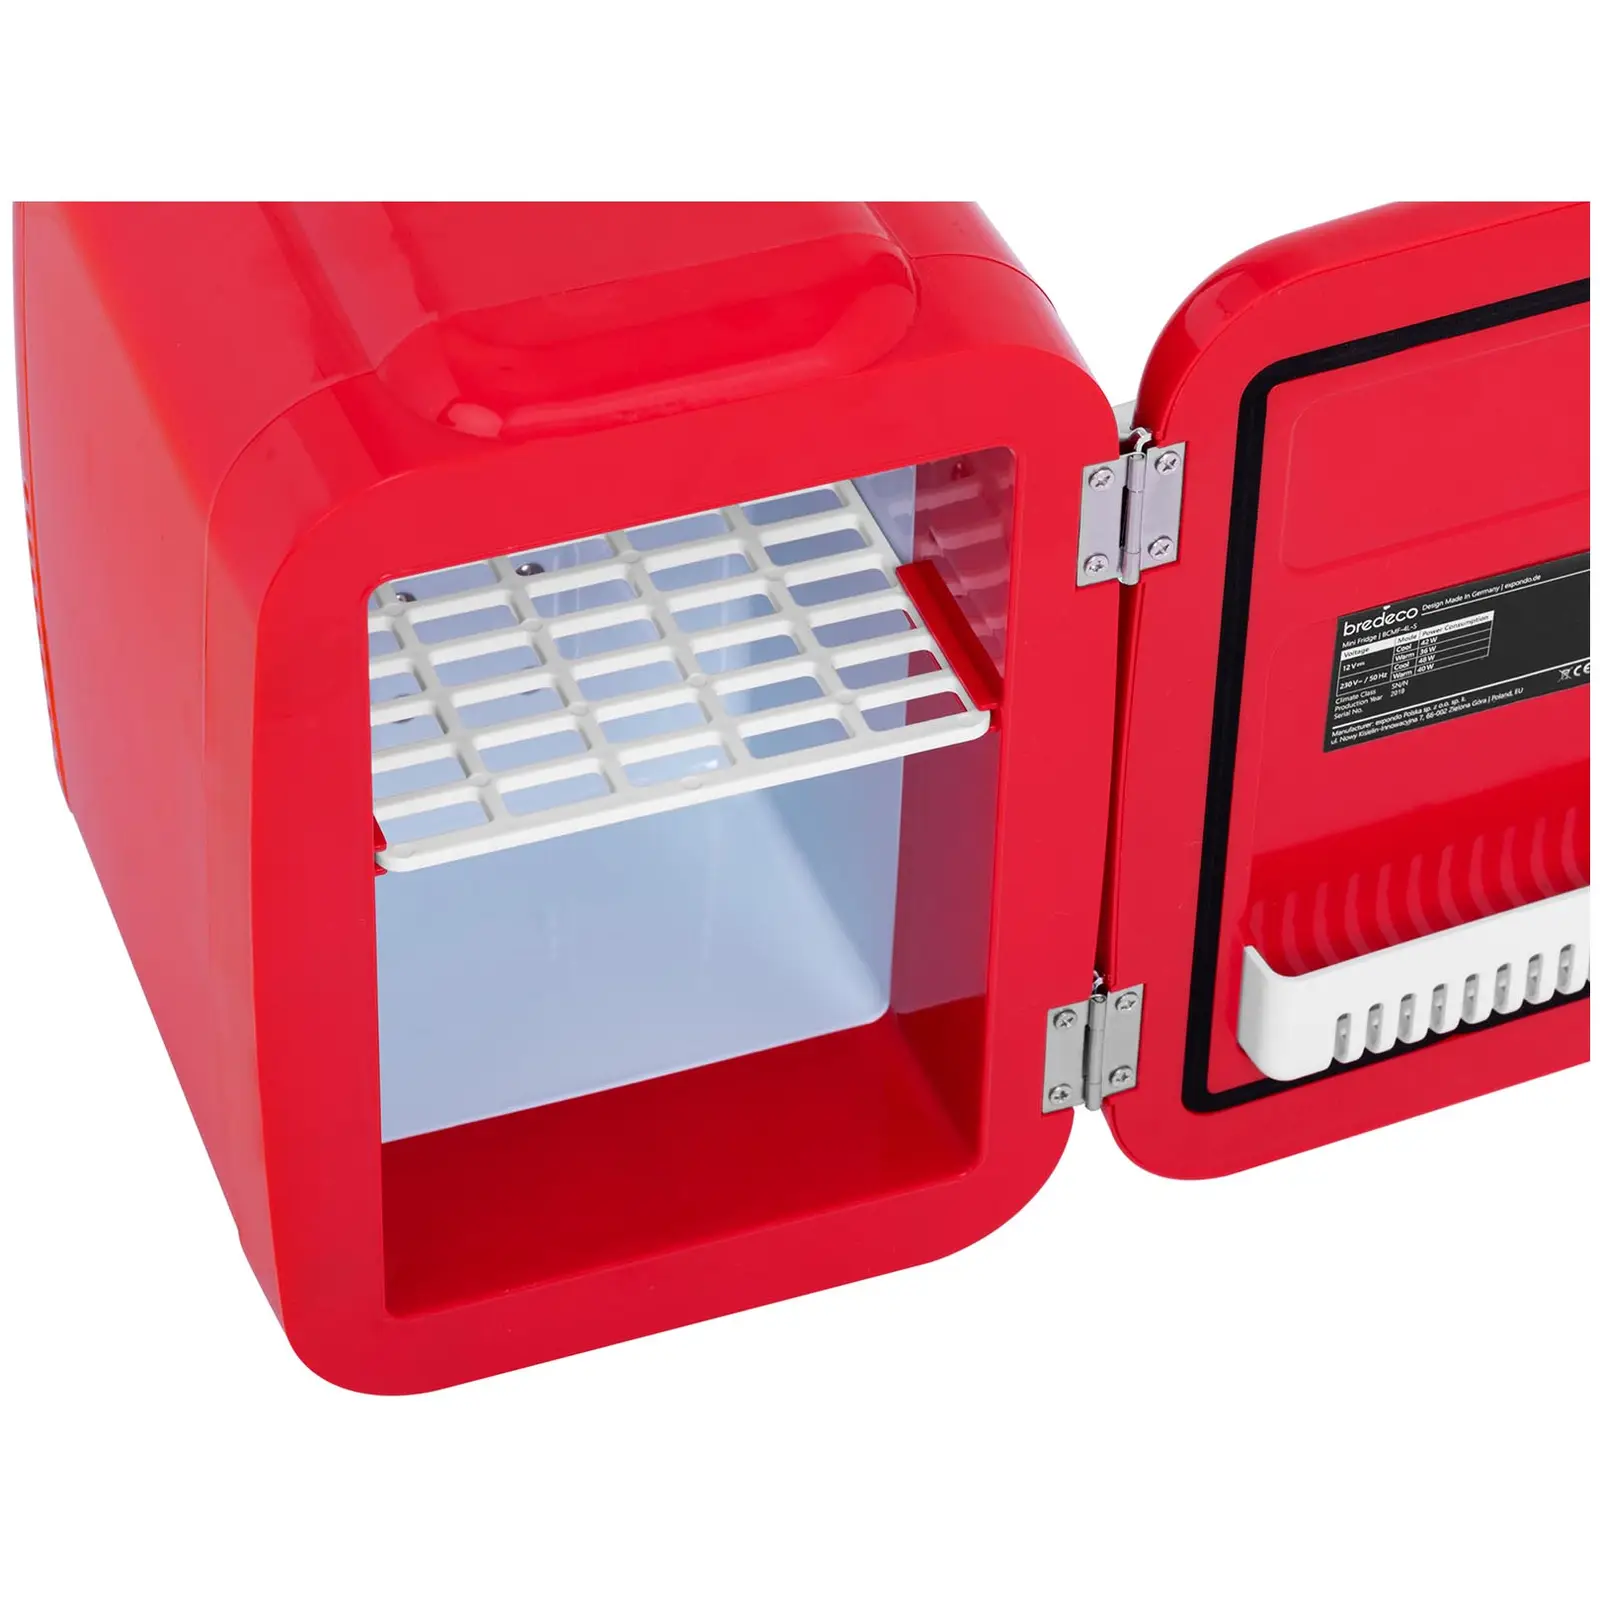 Mini Kühlschrank - 4 L - rot